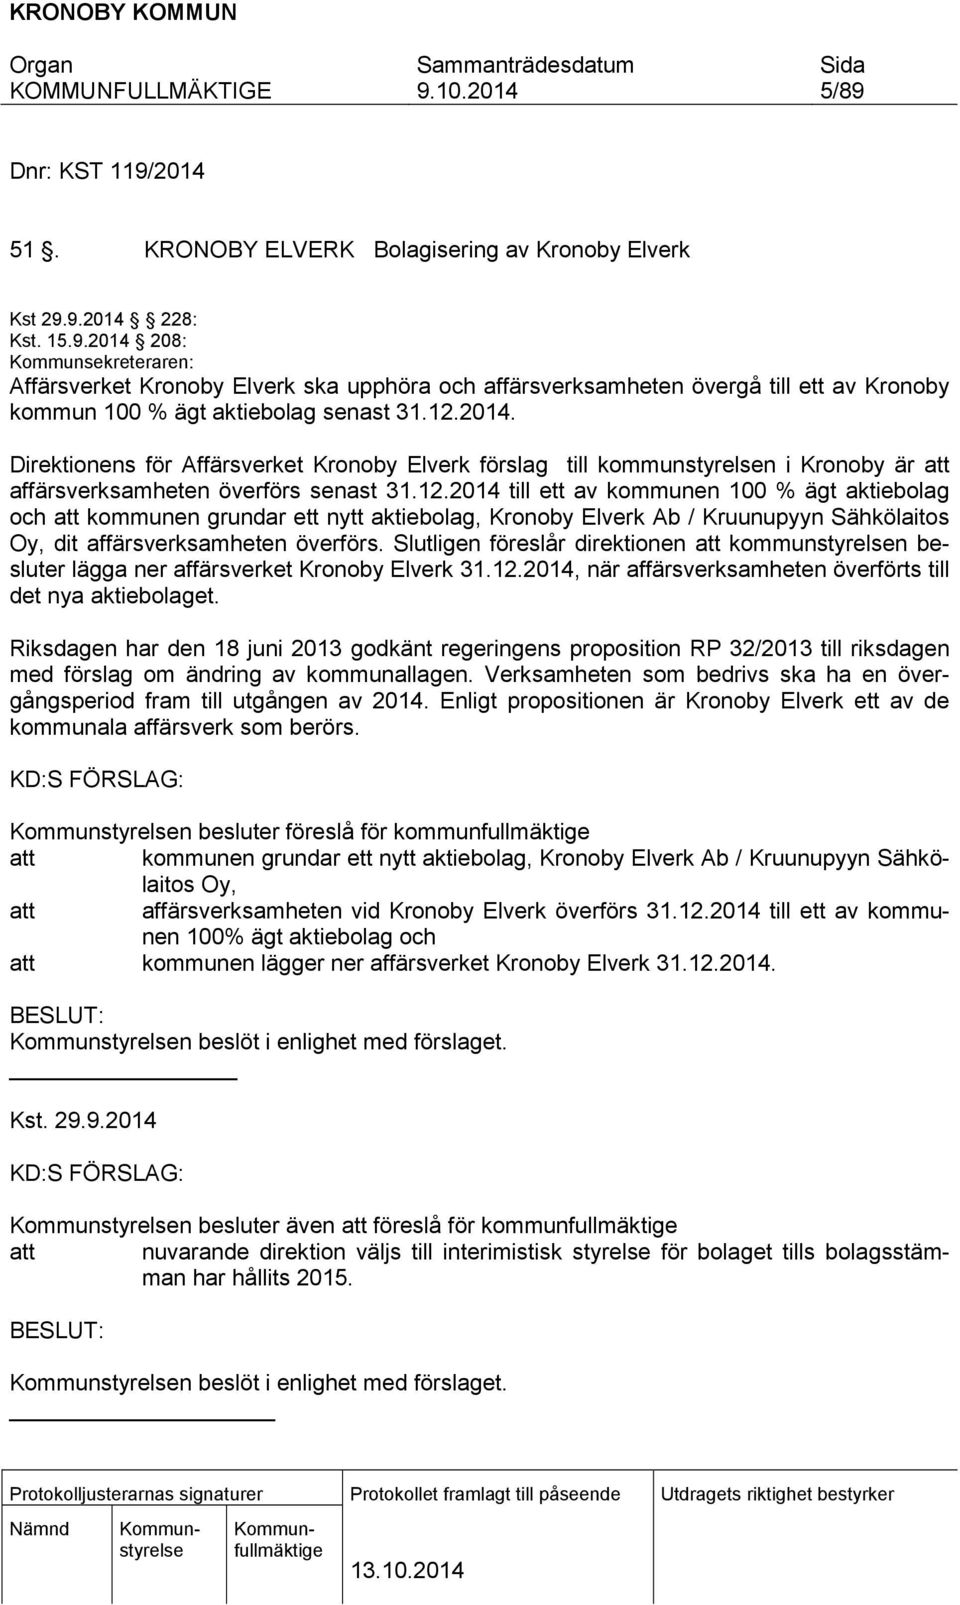 Slutligen föreslår direktionen att kommunstyrelsen besluter lägga ner affärsverket Kronoby Elverk 31.12.2014, när affärsverksamheten överförts till det nya aktiebolaget.